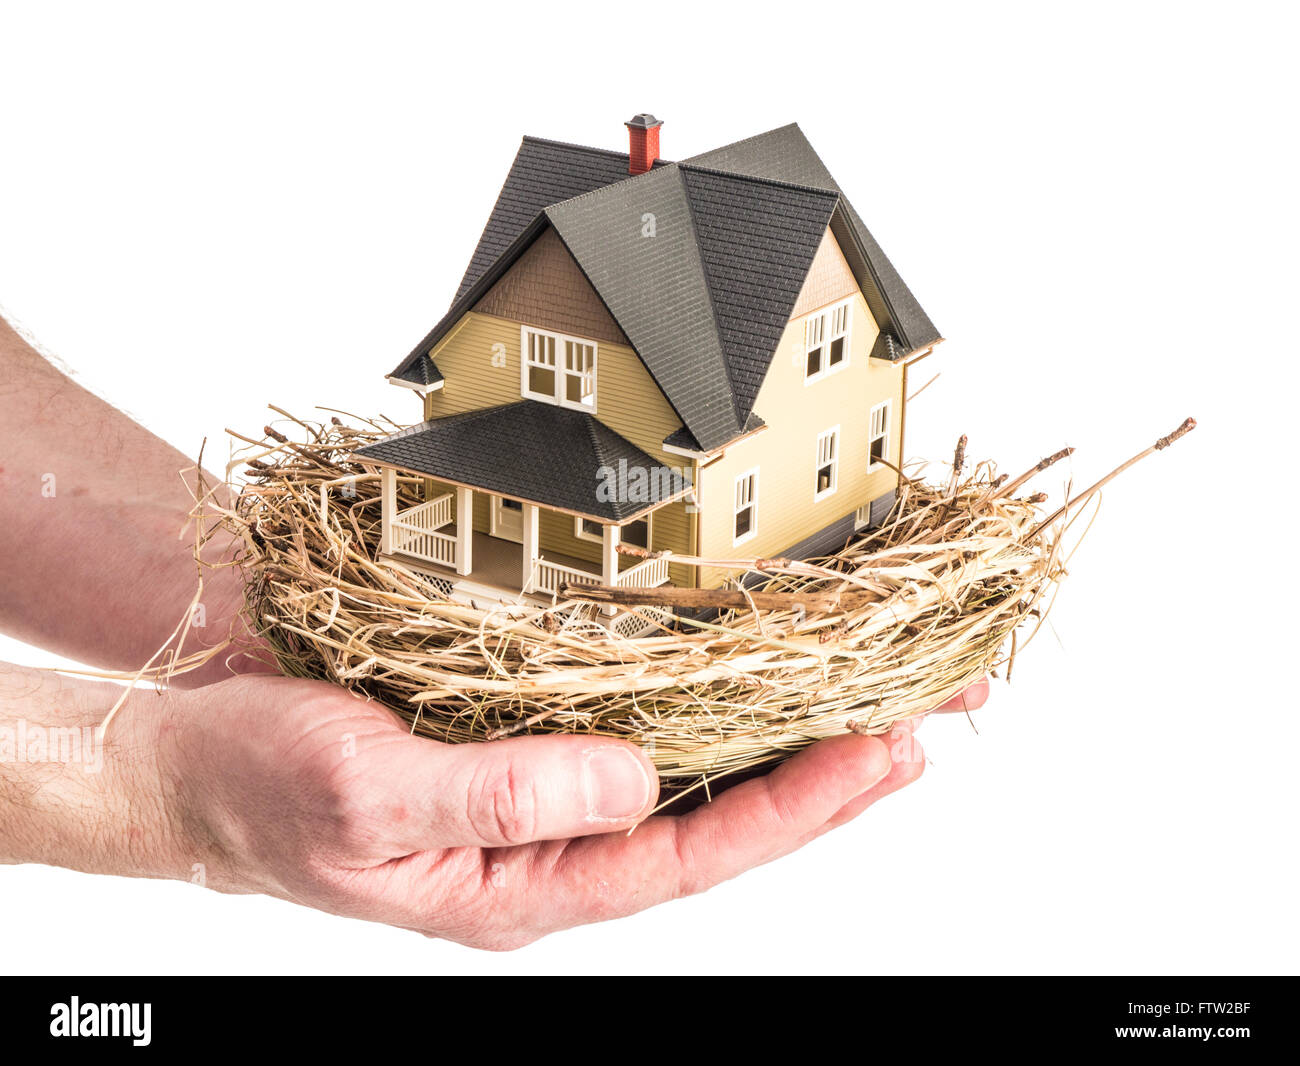 Foto von ein Mann hält ein Vogelnest mit einem Miniatur-Haus innen veranschaulicht das Konzept der Immobilienanlage. Stockfoto